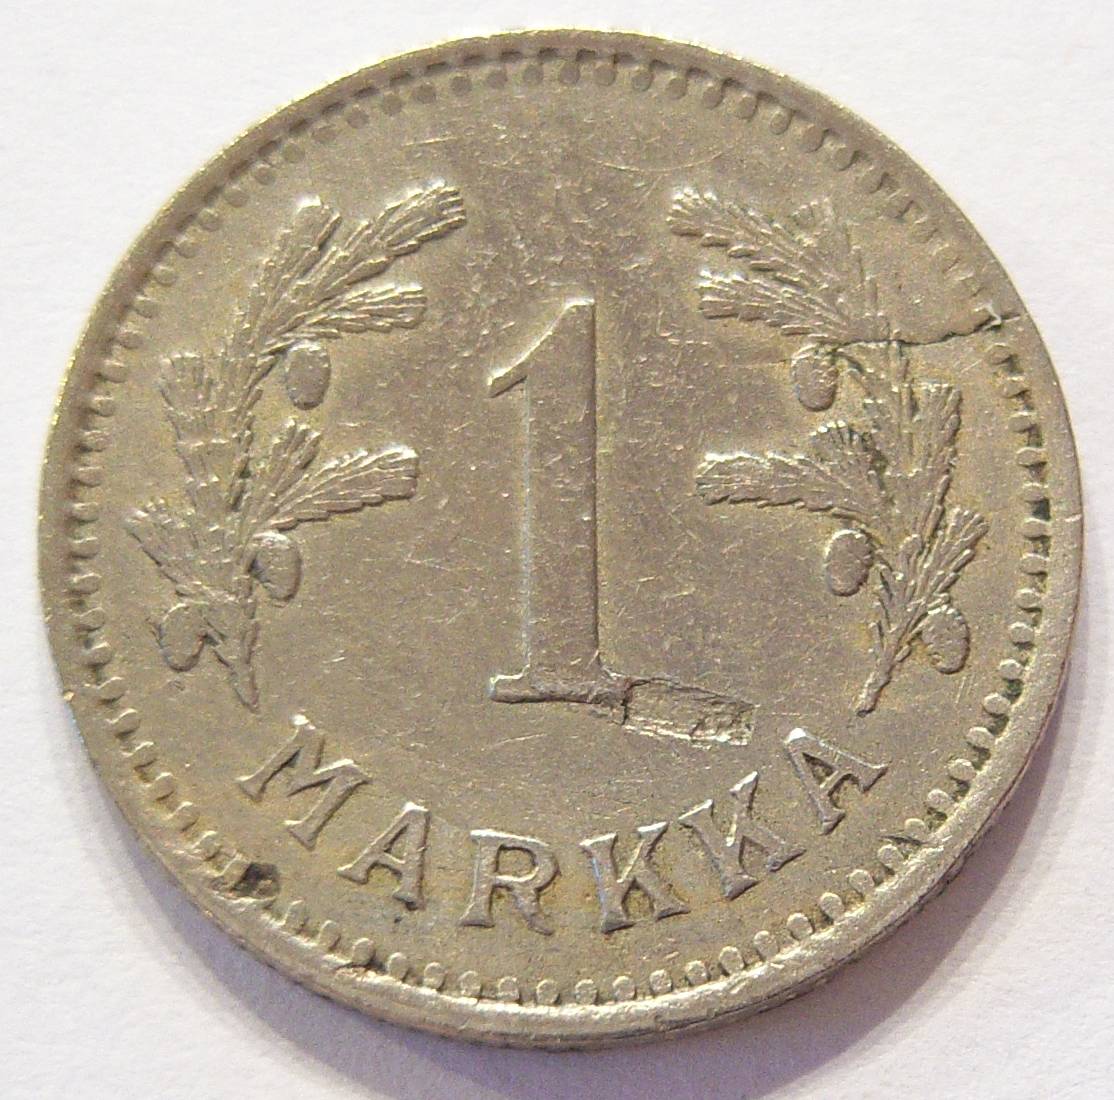  Finnland 1 Markka 1929   